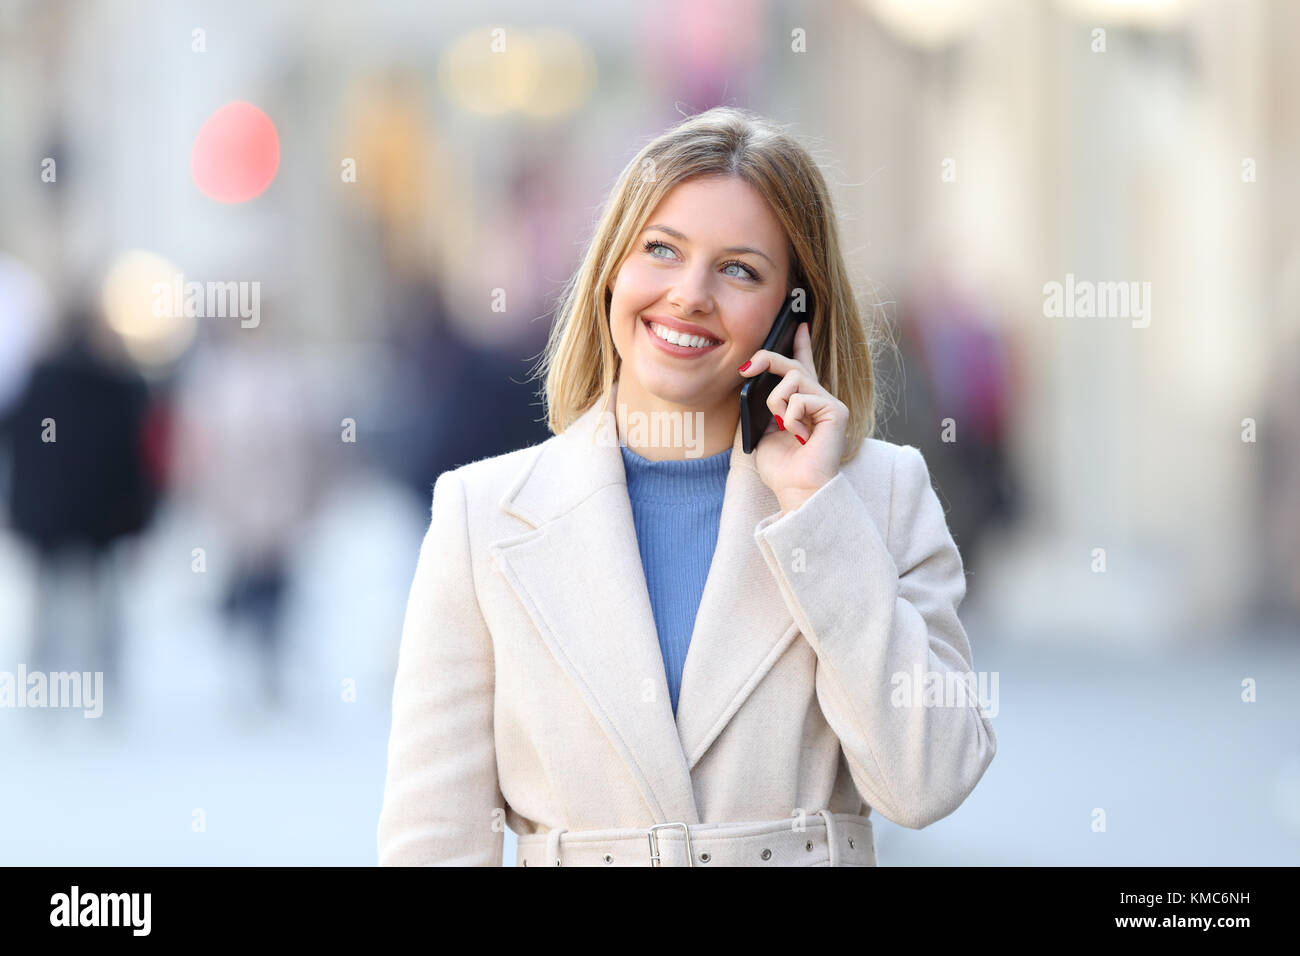 Vue avant, portrait d'une femme portant un manteau blanc appelant sur le téléphone et à côté à dans la rue en hiver Banque D'Images